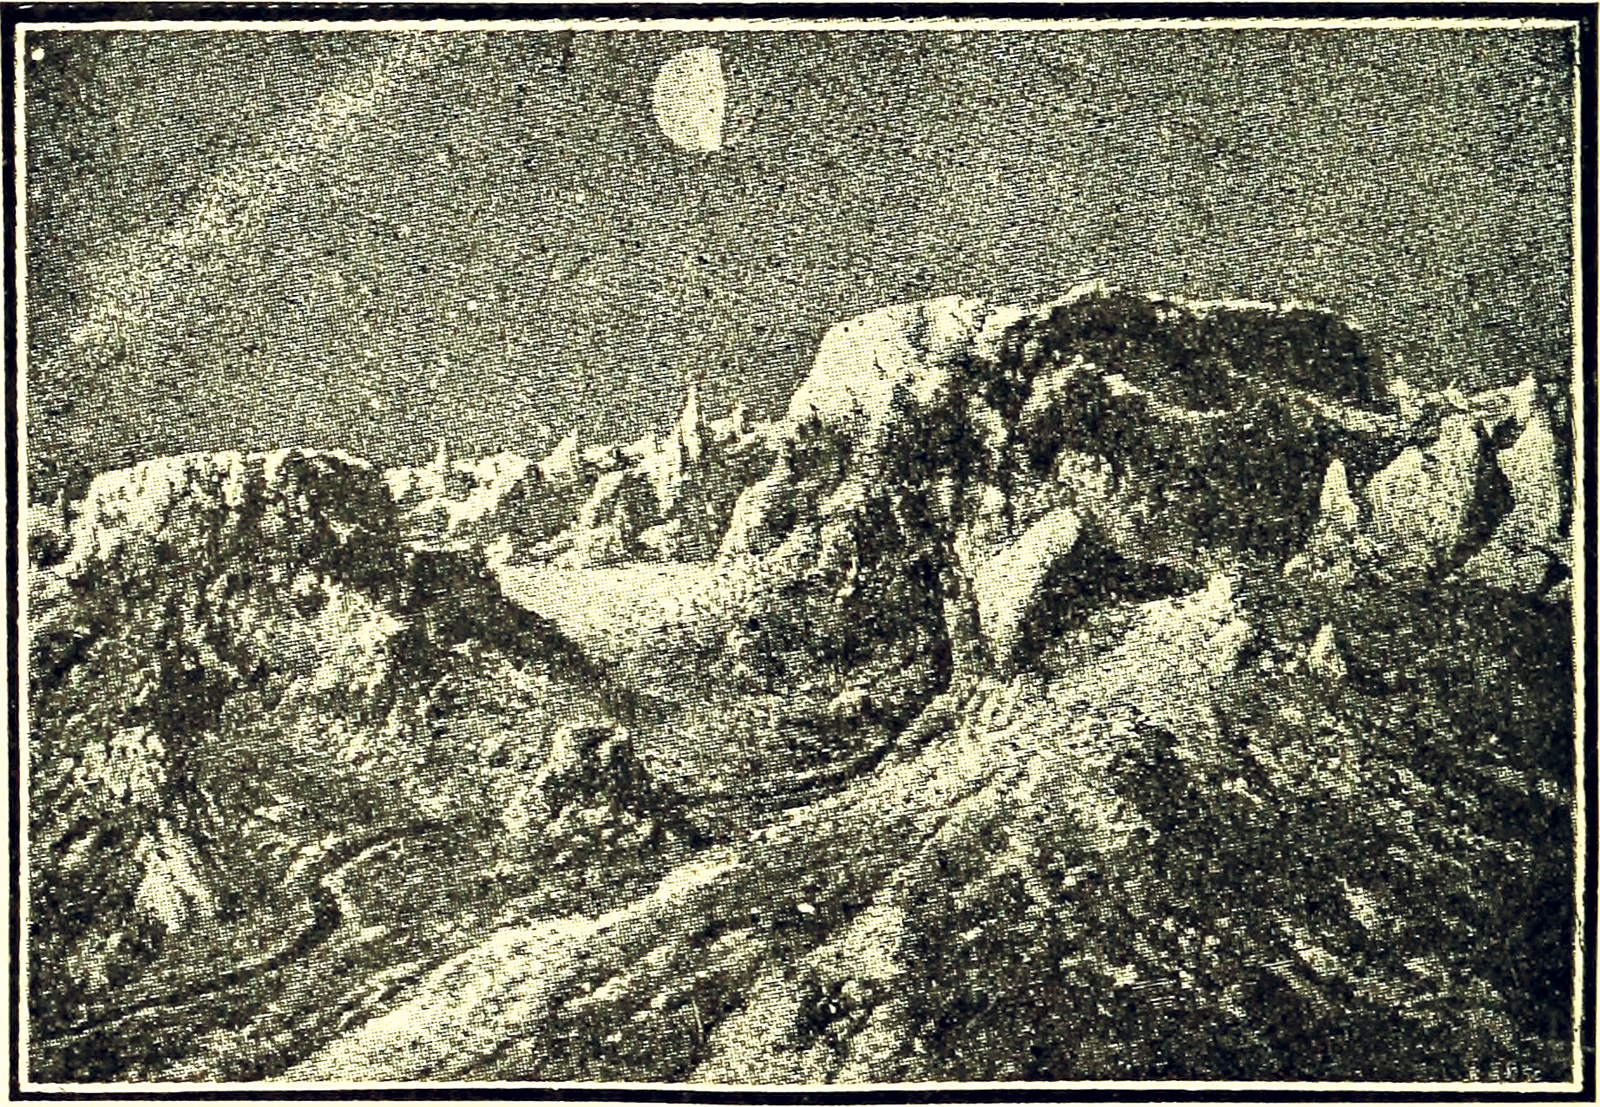 Camille Flammarion, *Astronomía para aficionados*, 1904